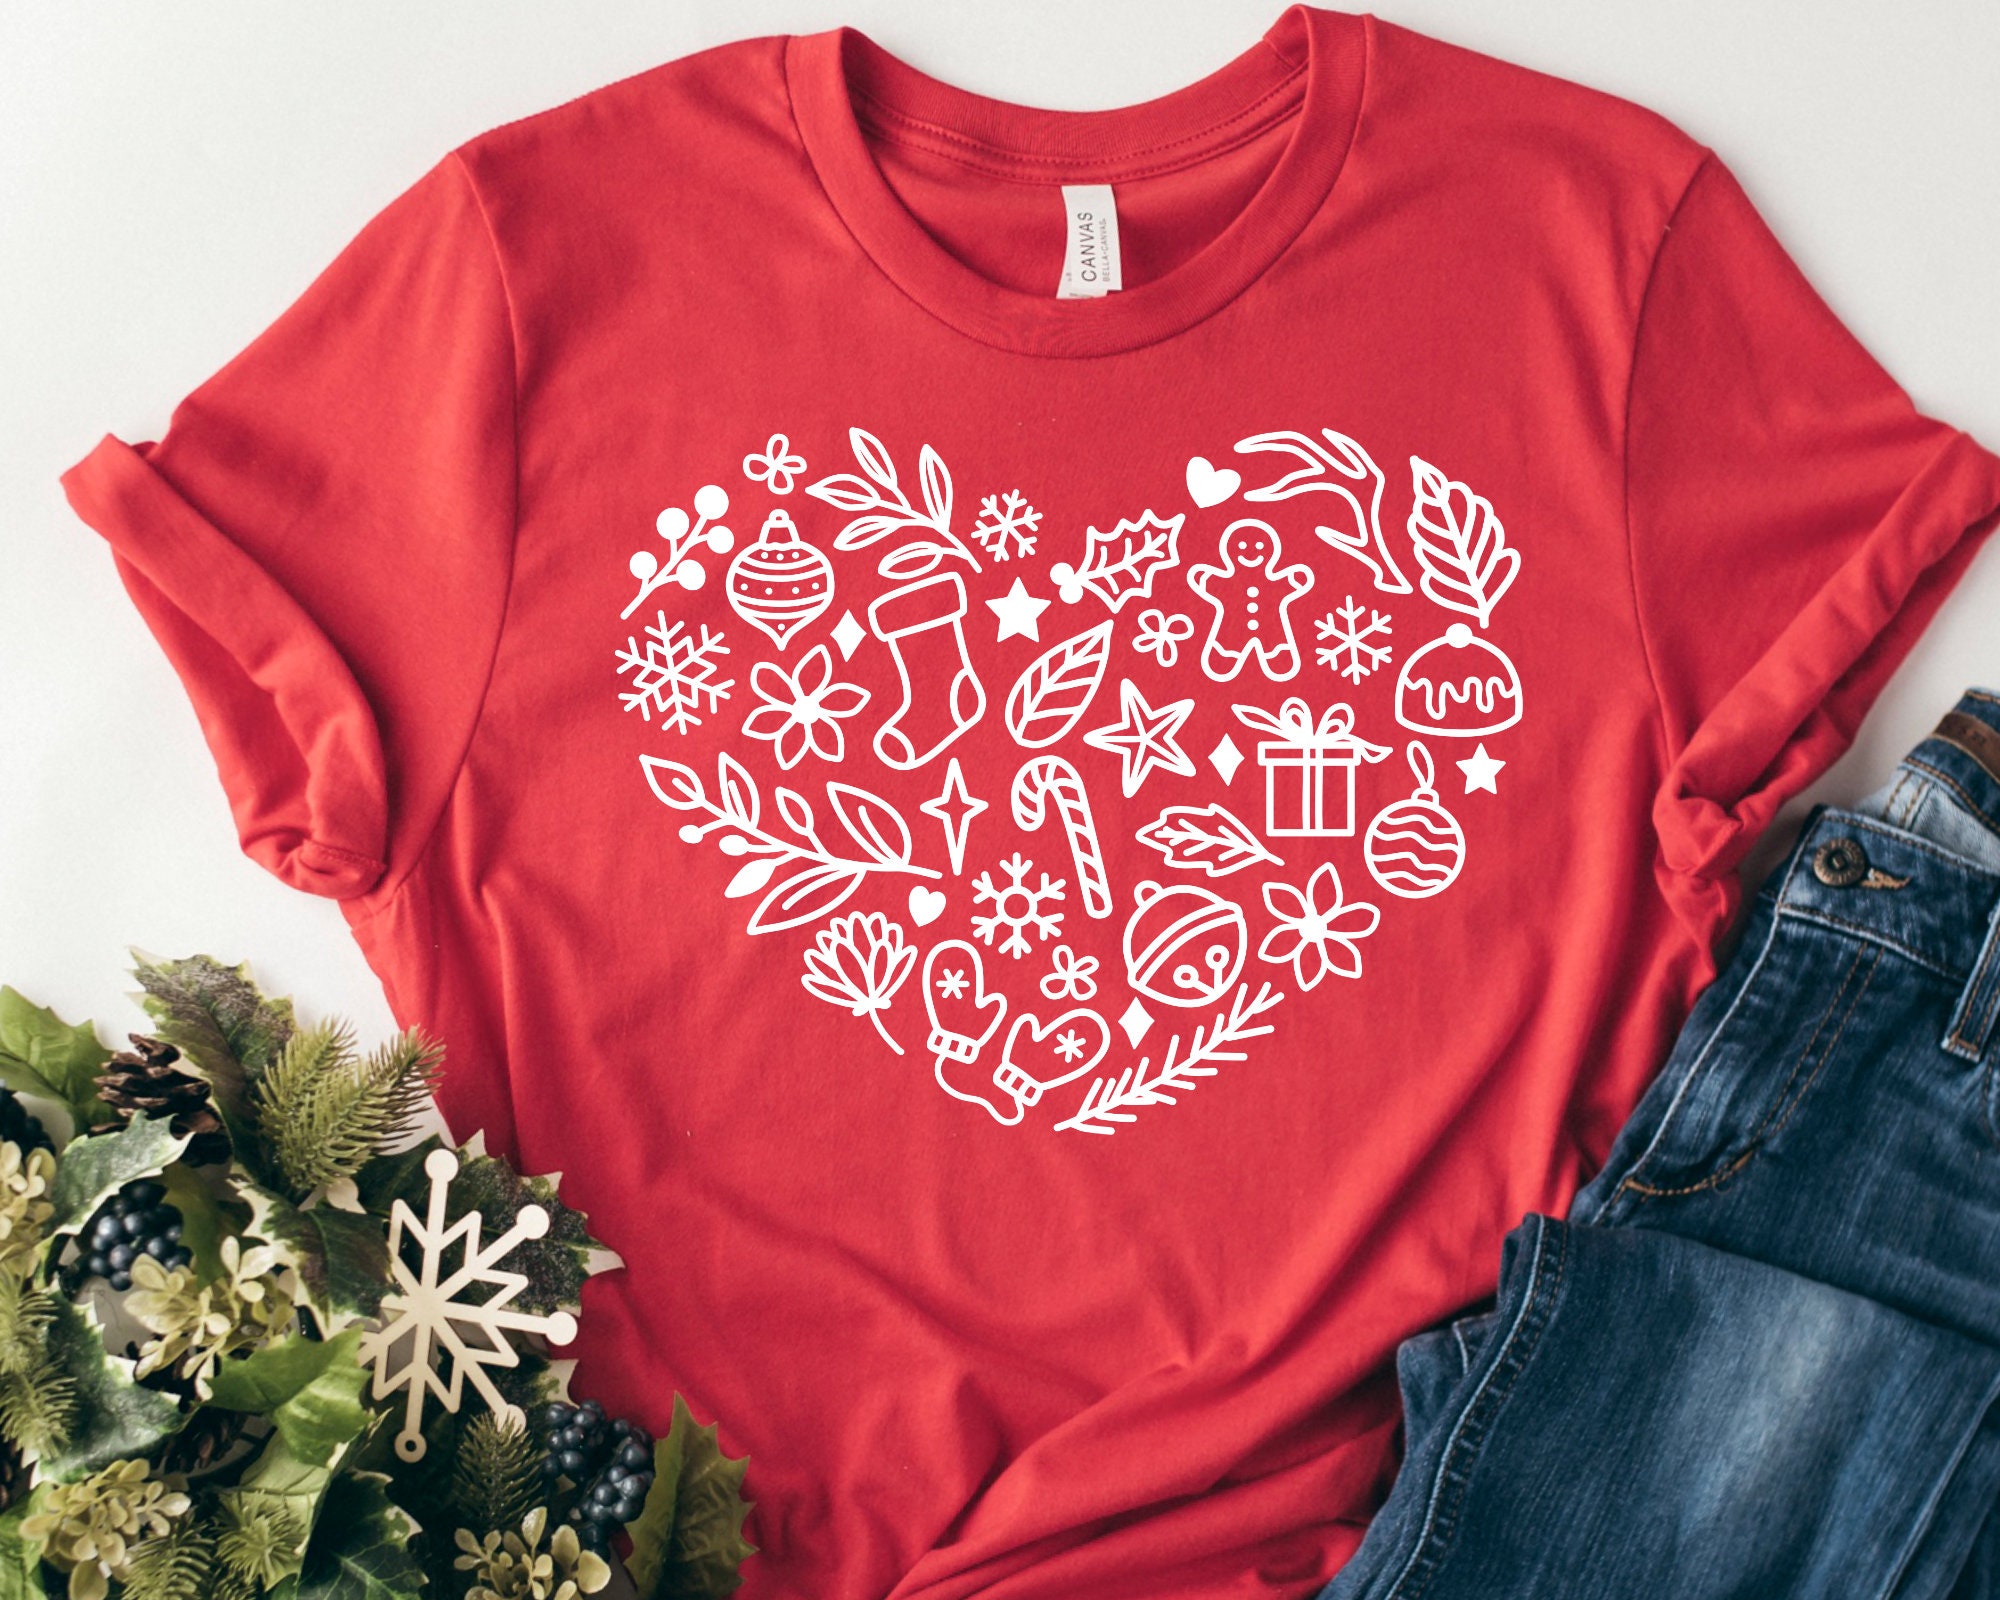 Christmas SVG Bundle - Christmas shirt SVG for Cricut - Christmas tee